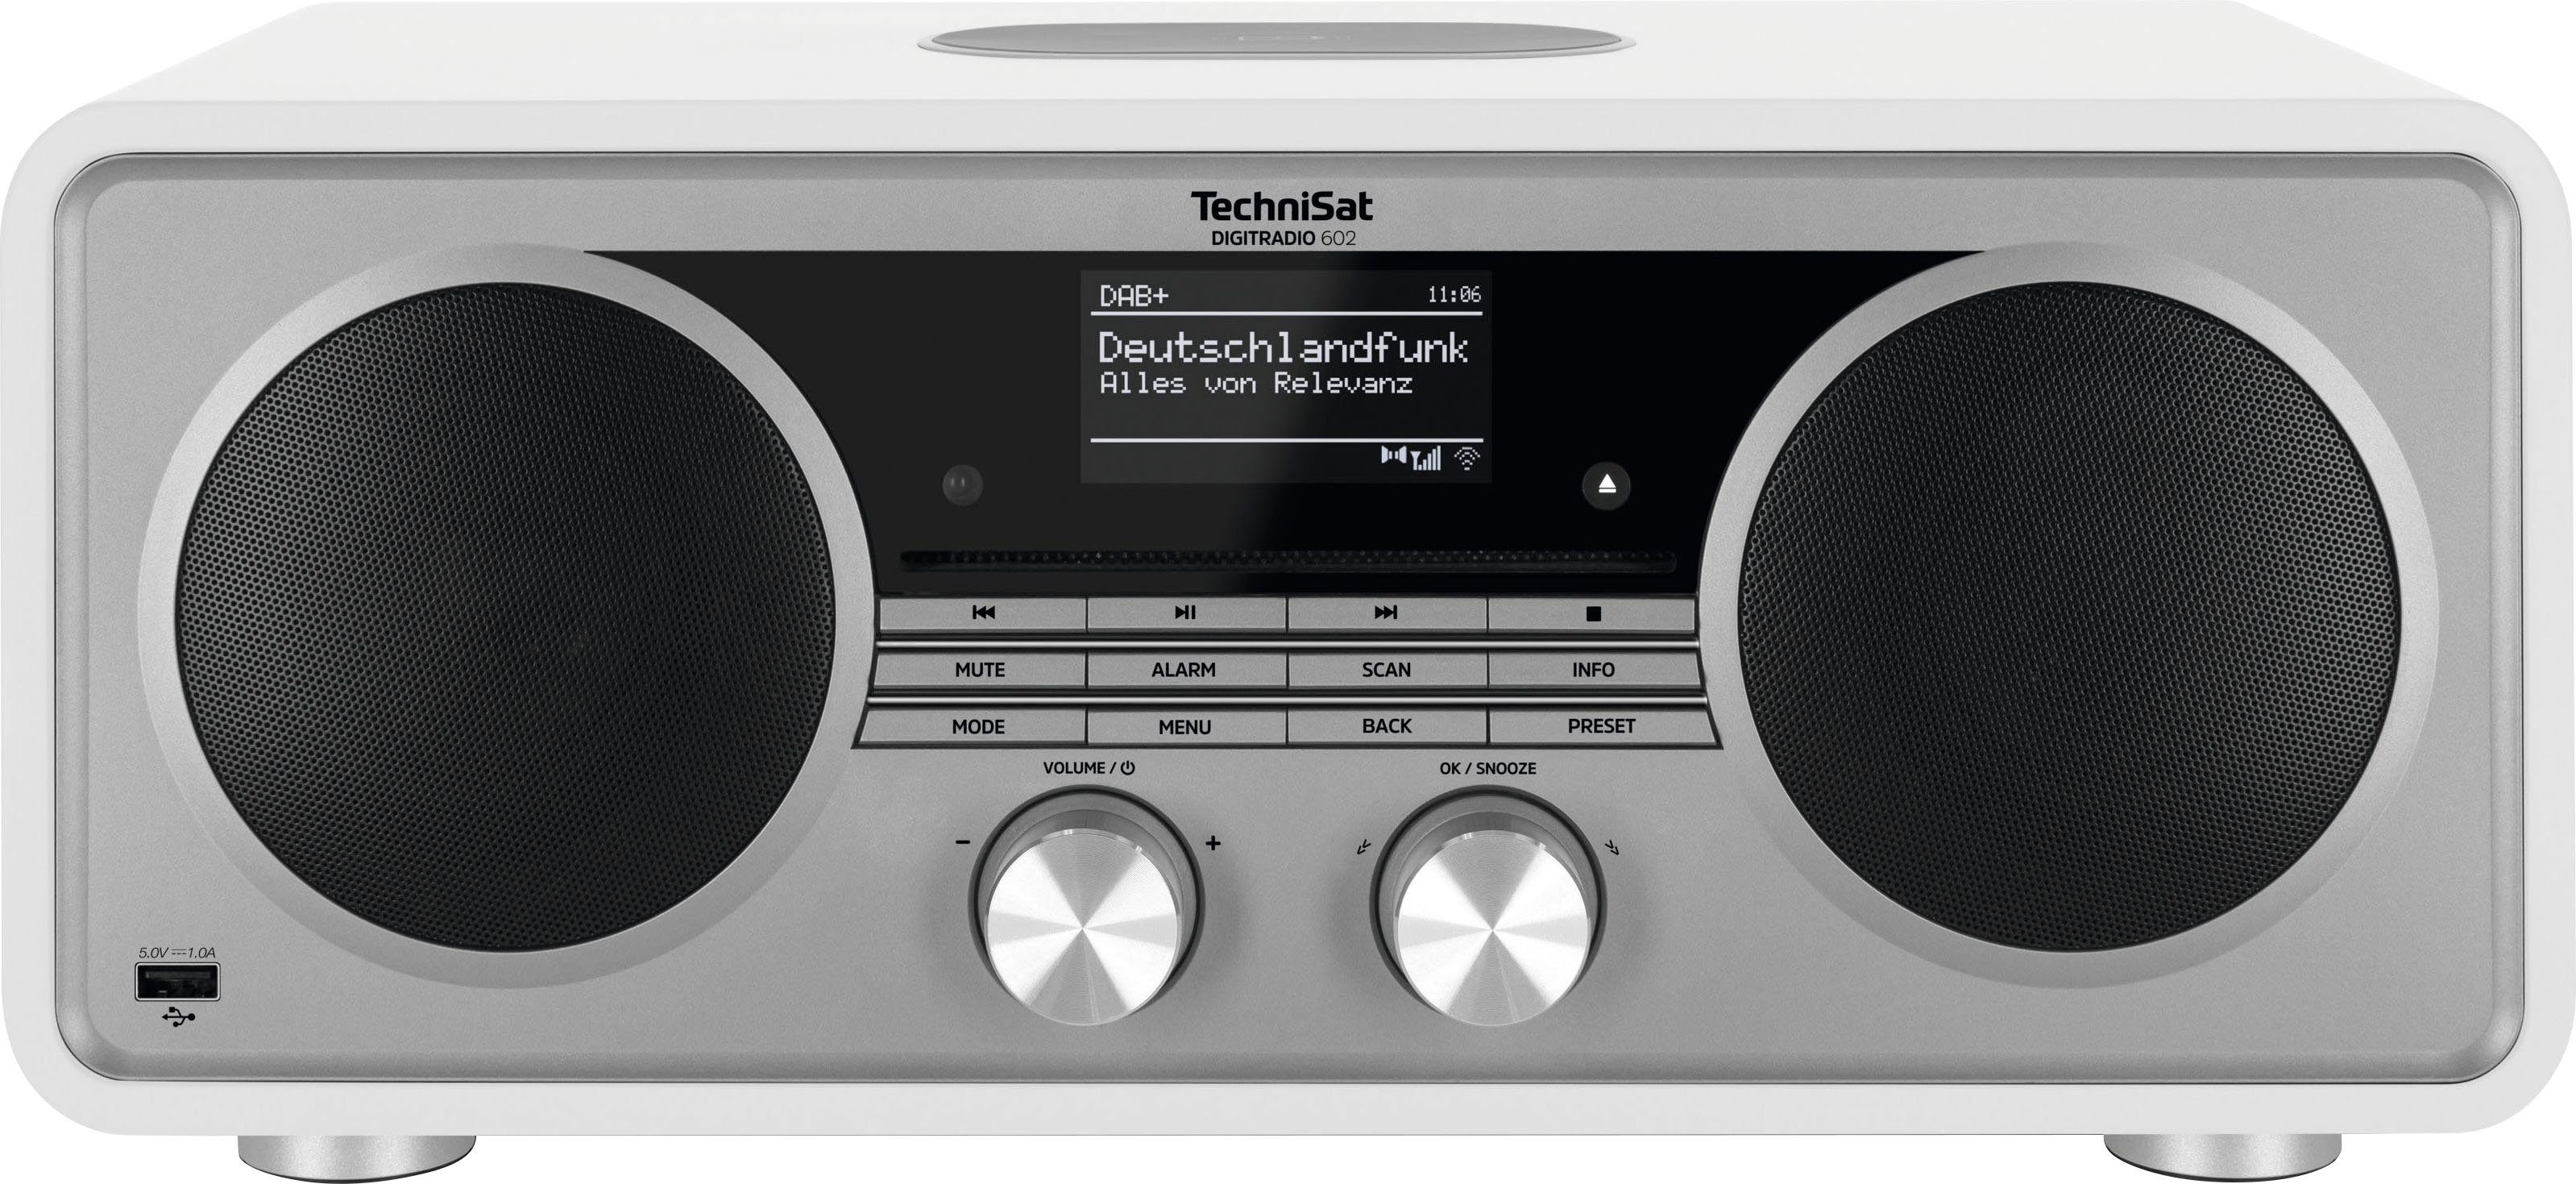 (Digitalradio Weiß/Silber RDS, 602 W, TechniSat Internet-Radio 70 DIGITRADIO mit Stereoanlage, (DAB), CD-Player) UKW